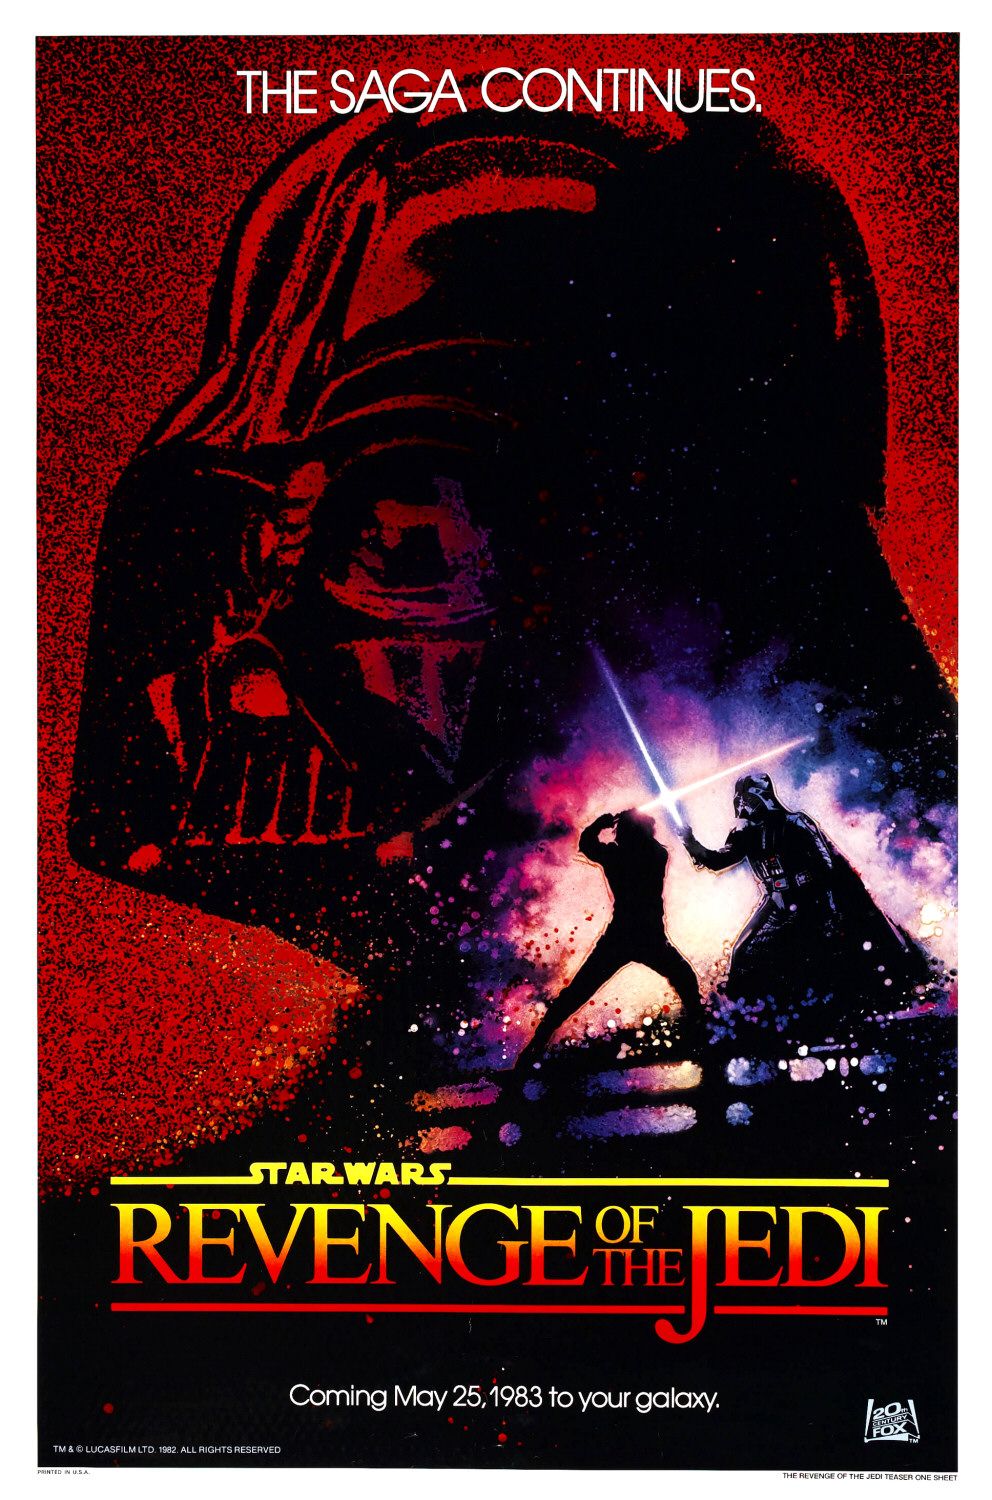 Revenge_of_the_jedi_poster.jpg